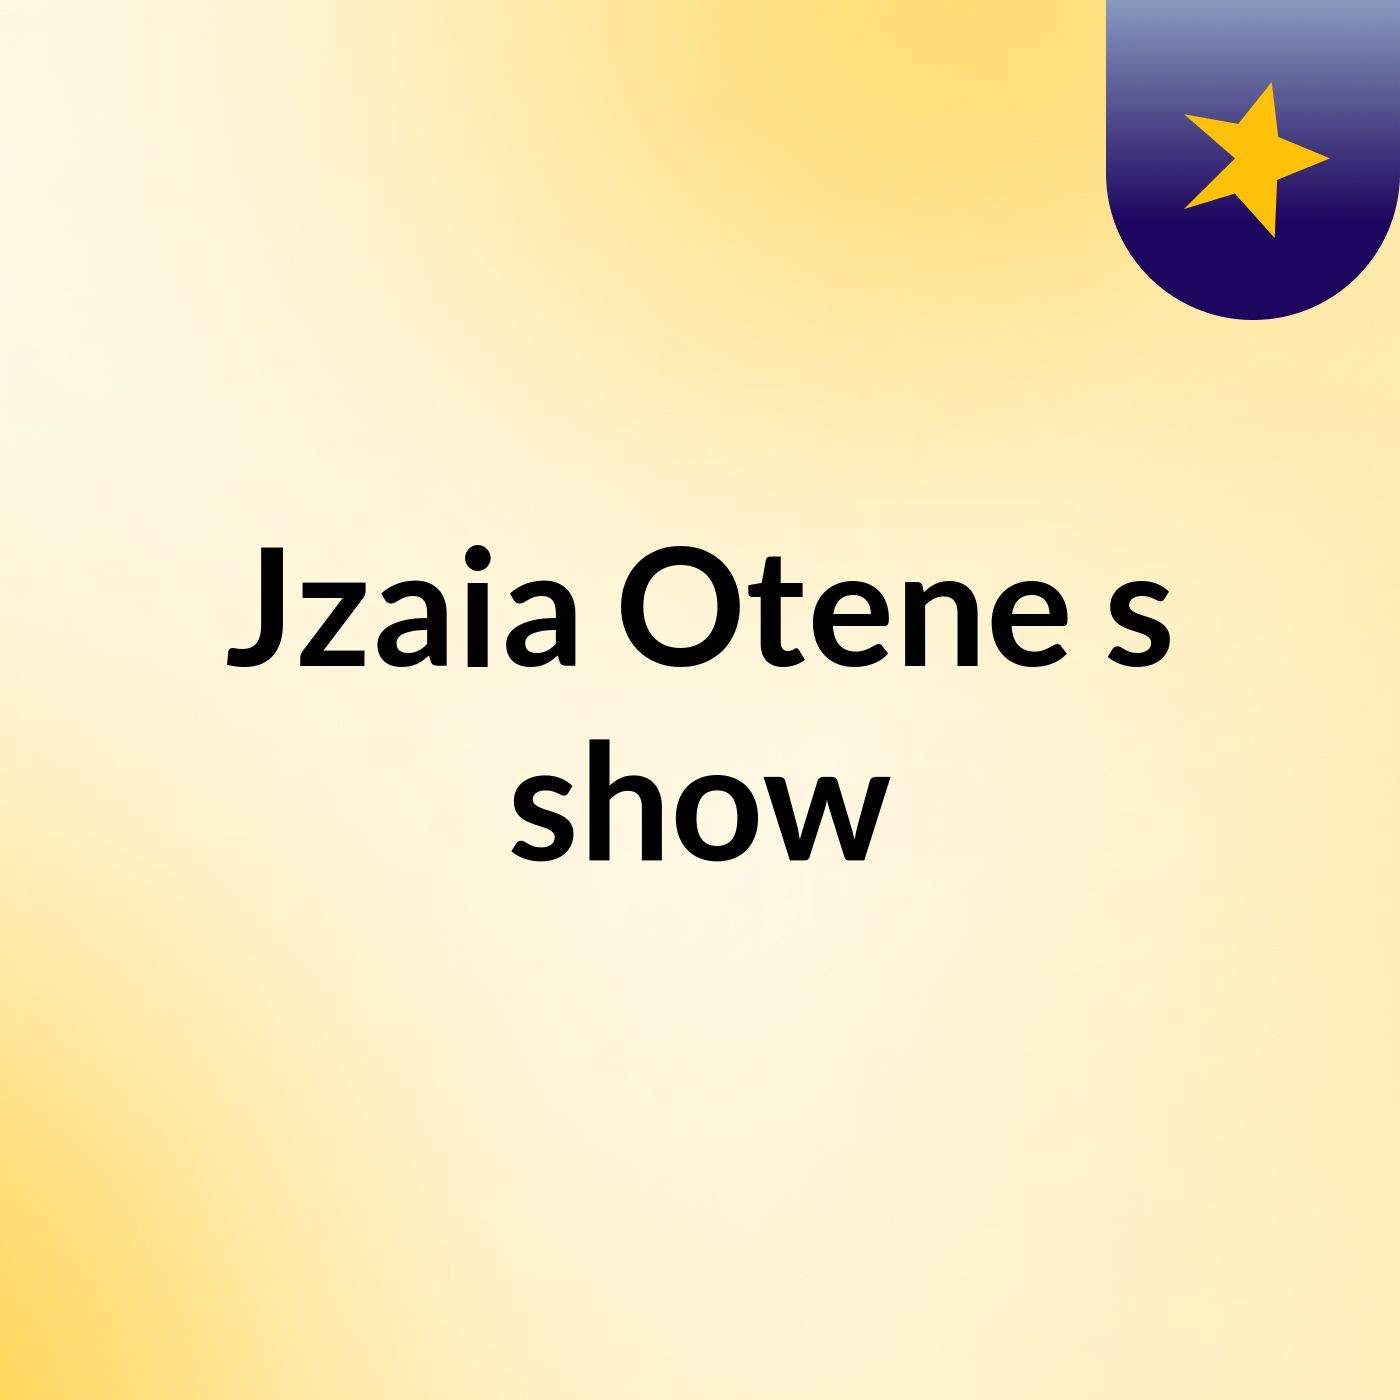 Jzaia Otene's show